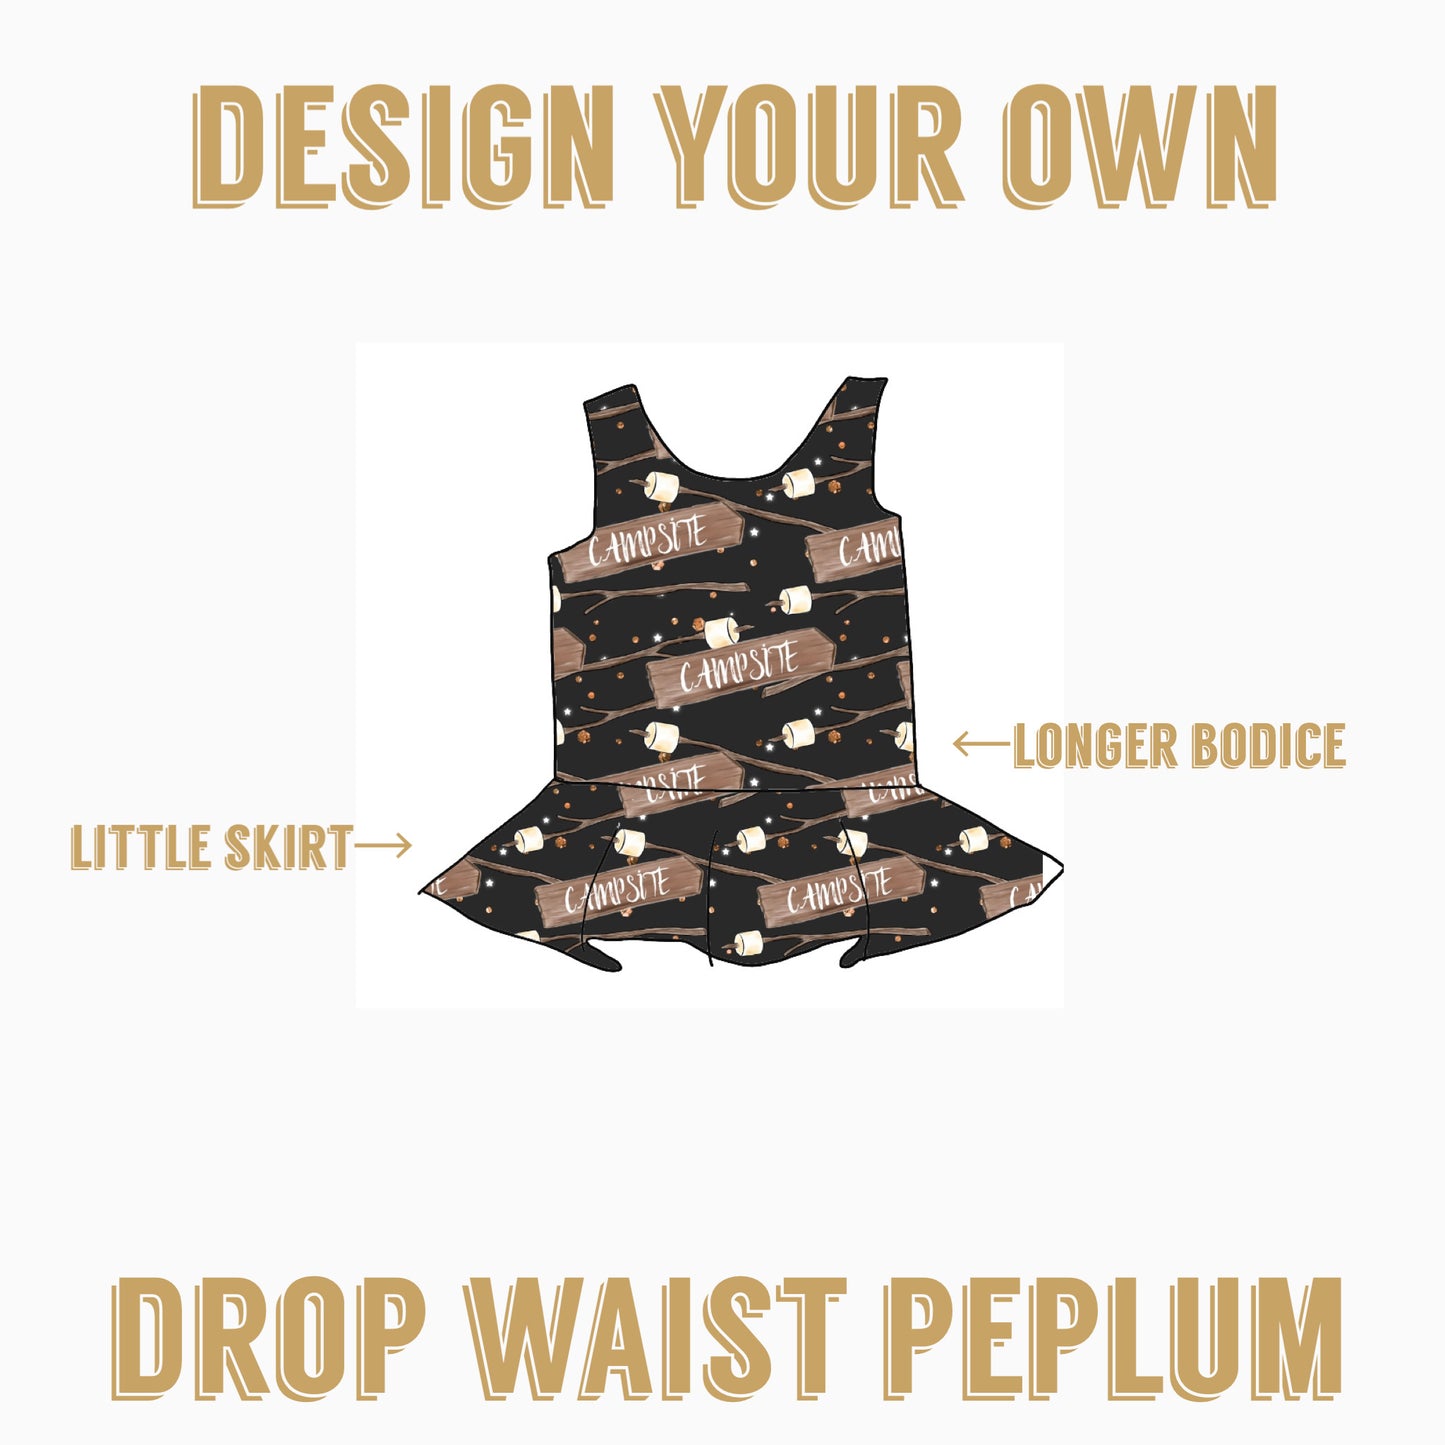 Design your own| Drop Waist Peplum